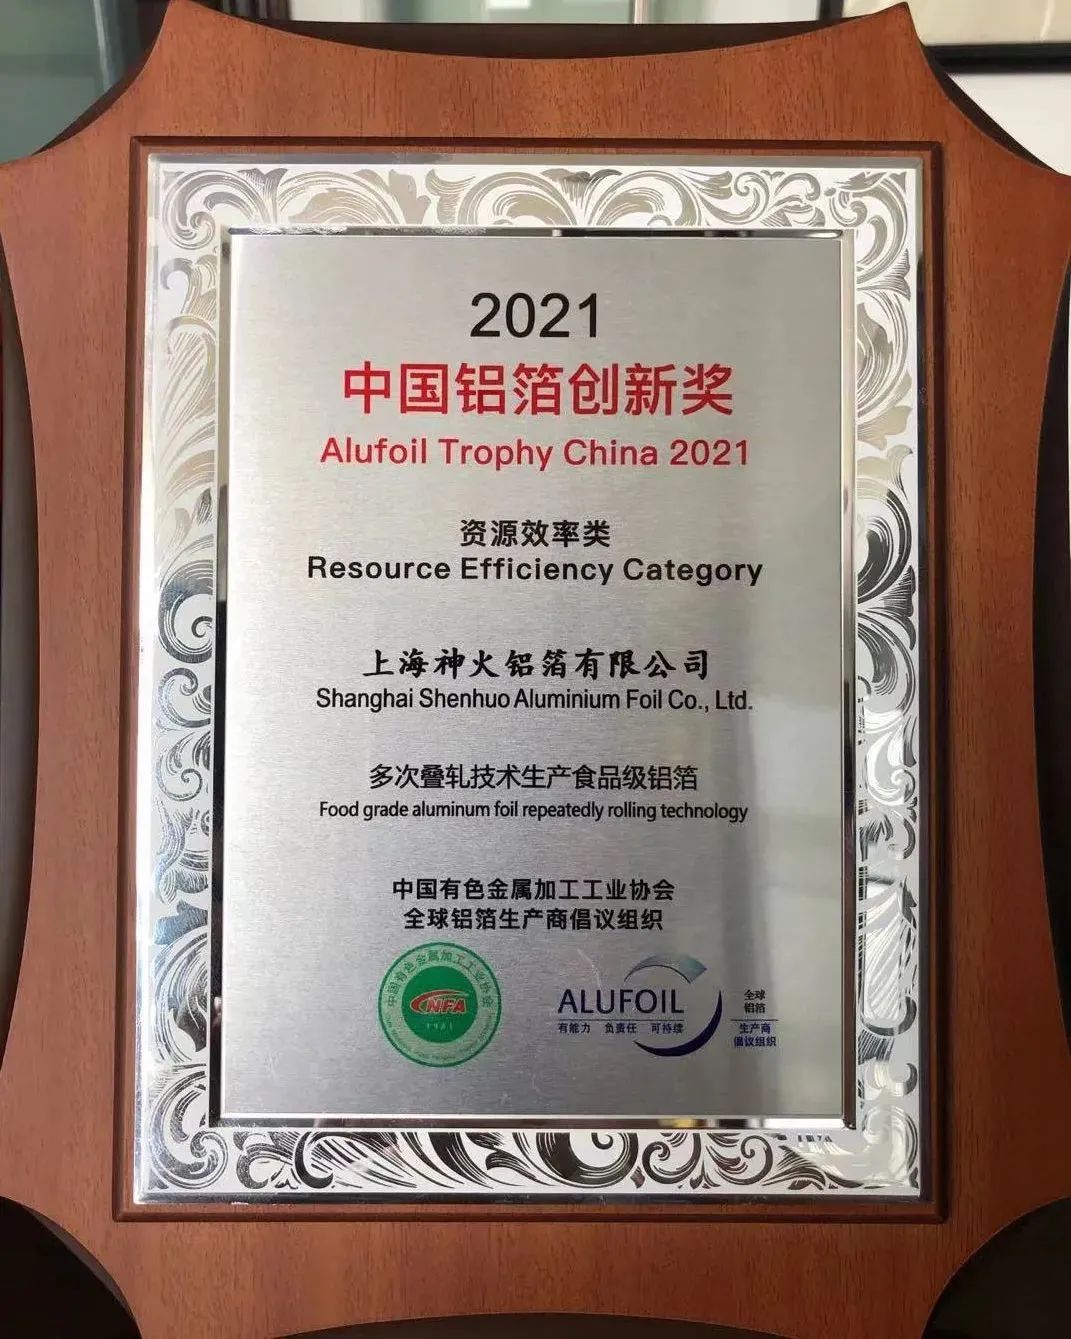 神火股份上海铝箔获得2021年度“中国铝箔创新奖”